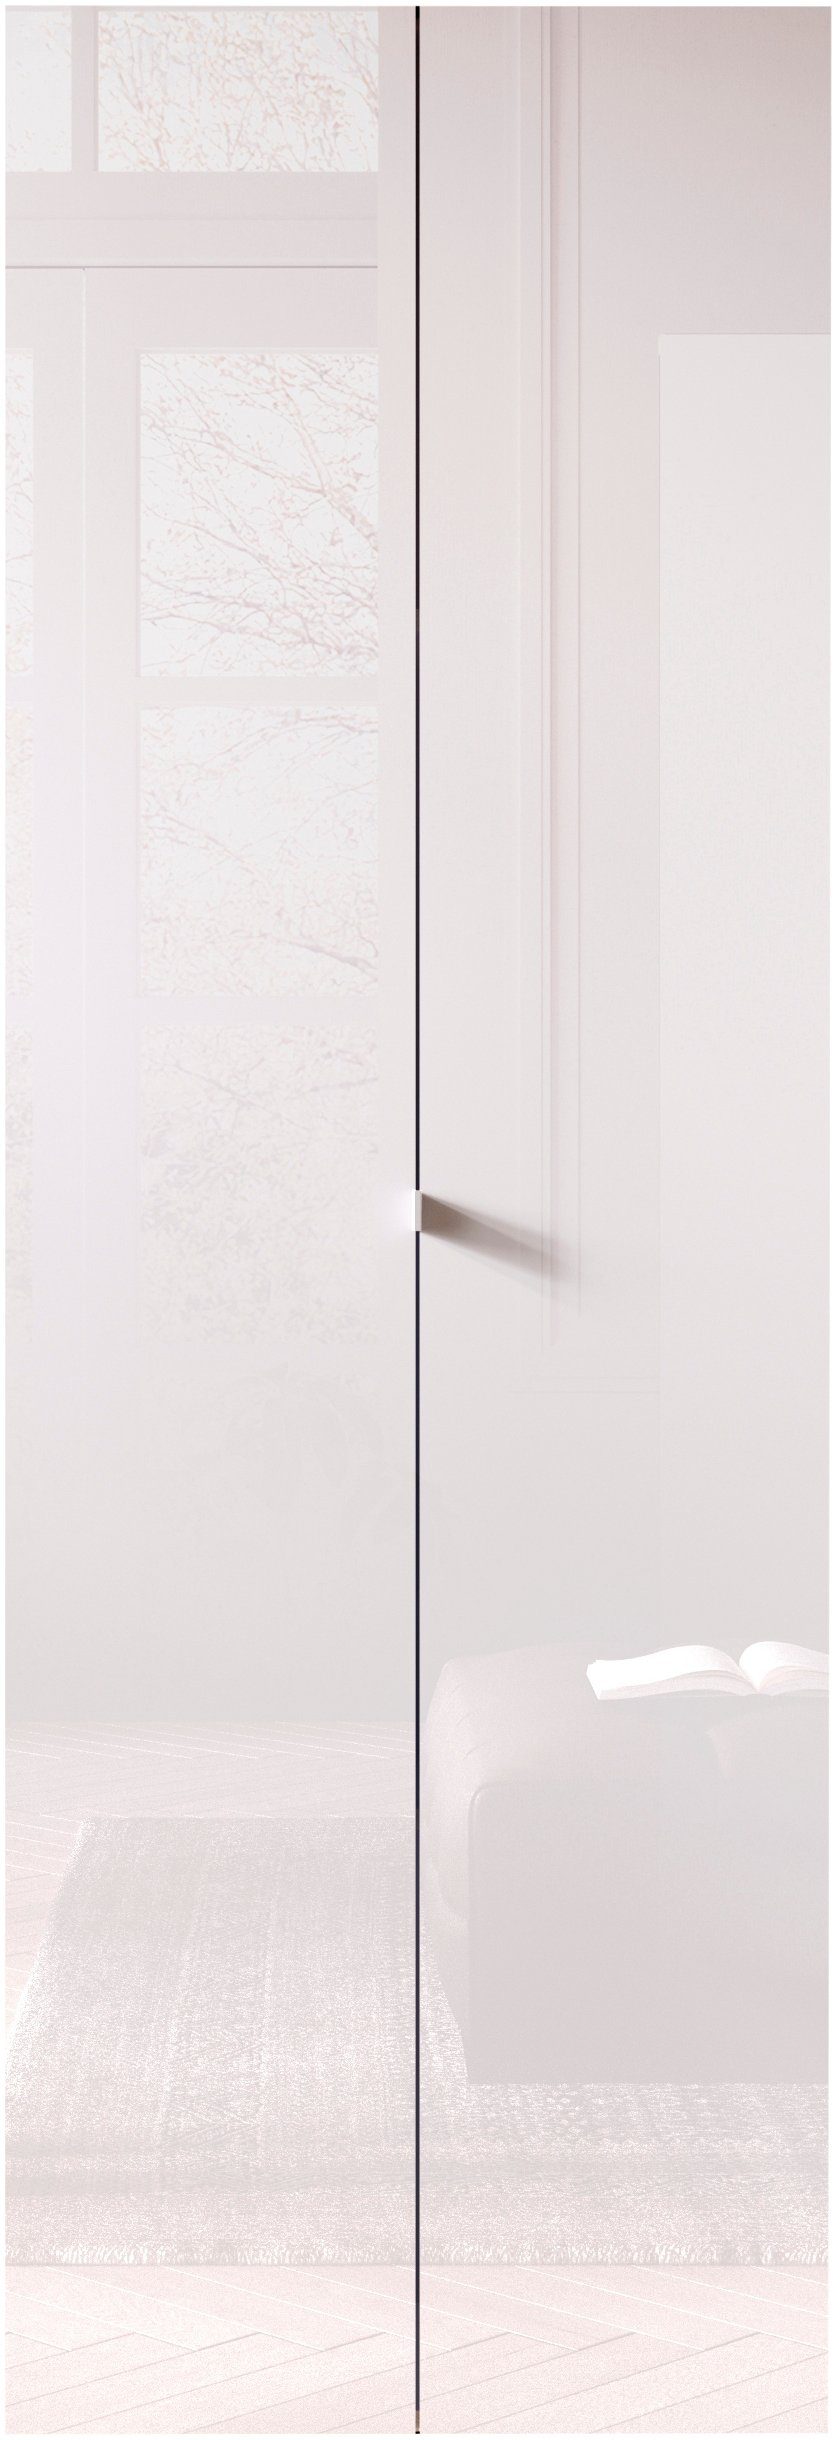 INOSIGN Aktenschrank Basic, Büroschrank mit 2 Türen (innen 3 Einlegeböden), hoher Mehrzweckschrank in verschiedenen Farben, B 63 x H 184 cm